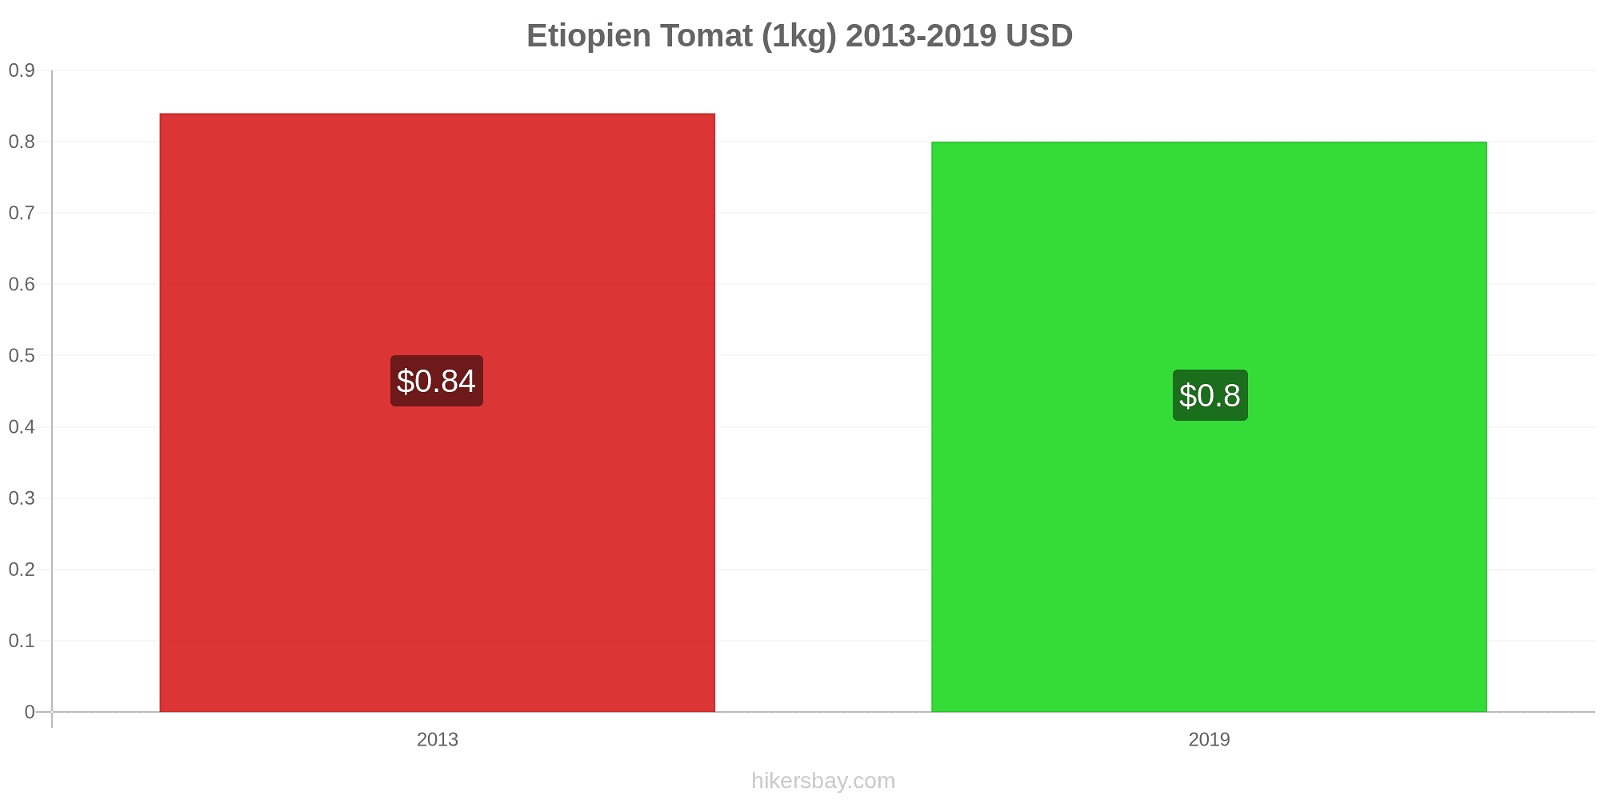 Etiopien prisændringer Tomat (1kg) hikersbay.com